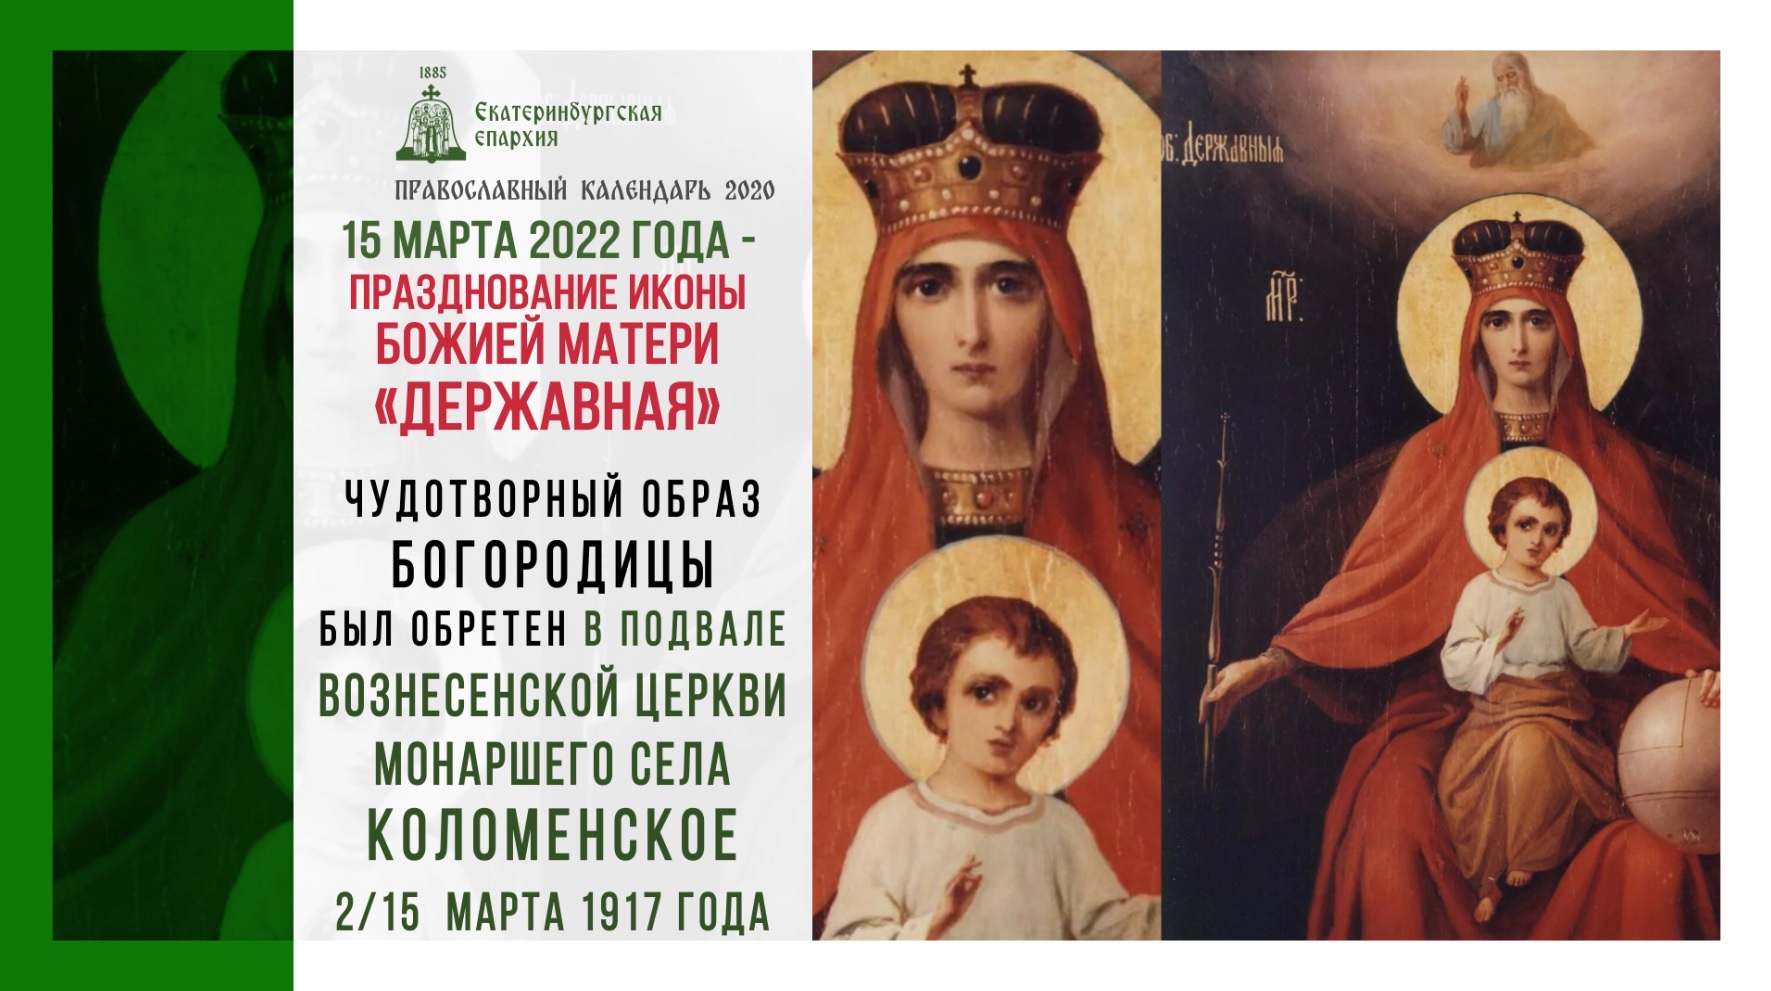 15 Марта Державная икона Богородицы